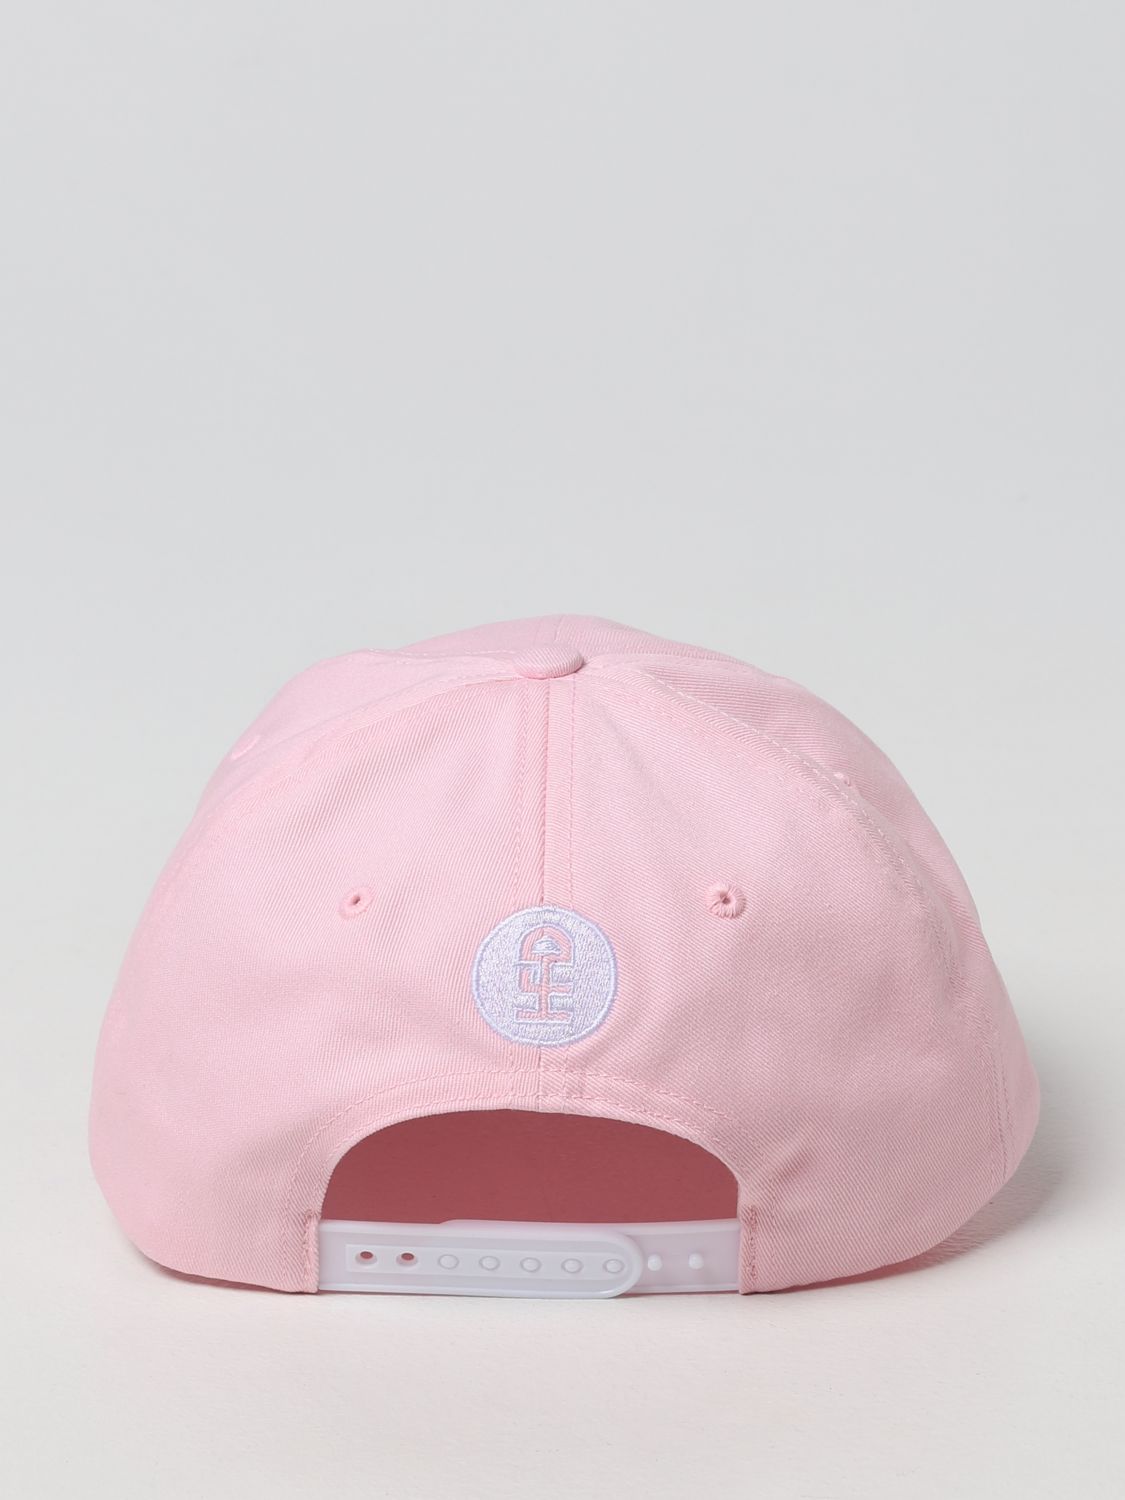 Hat Honey Fucking Dijon: Honey Fucking Dijon hat for men pink 3